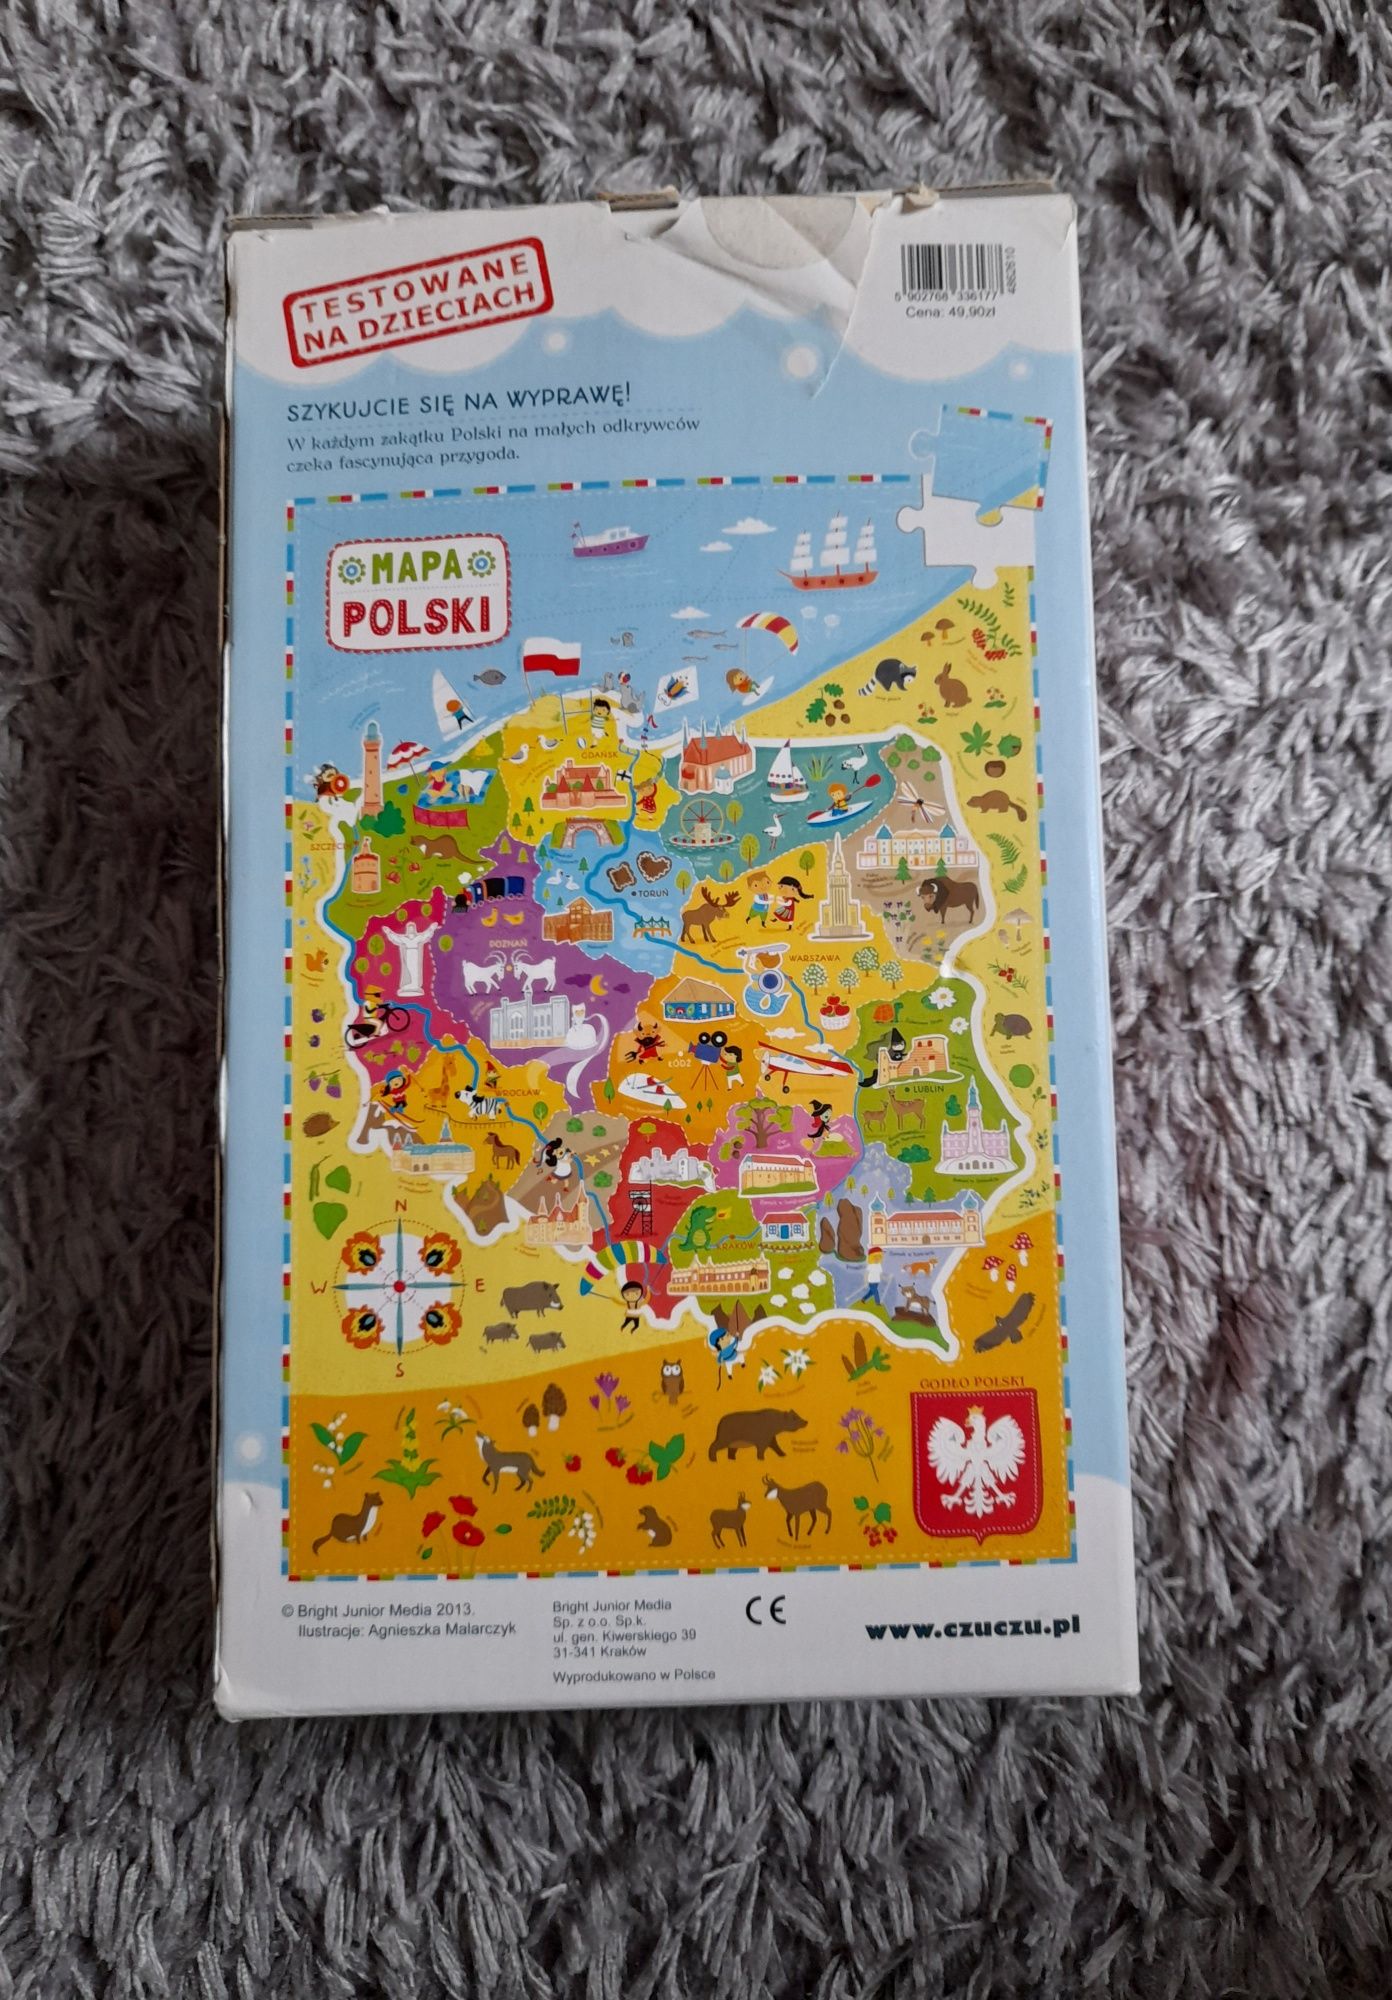 Puzzle mapa Polski Czu Czu